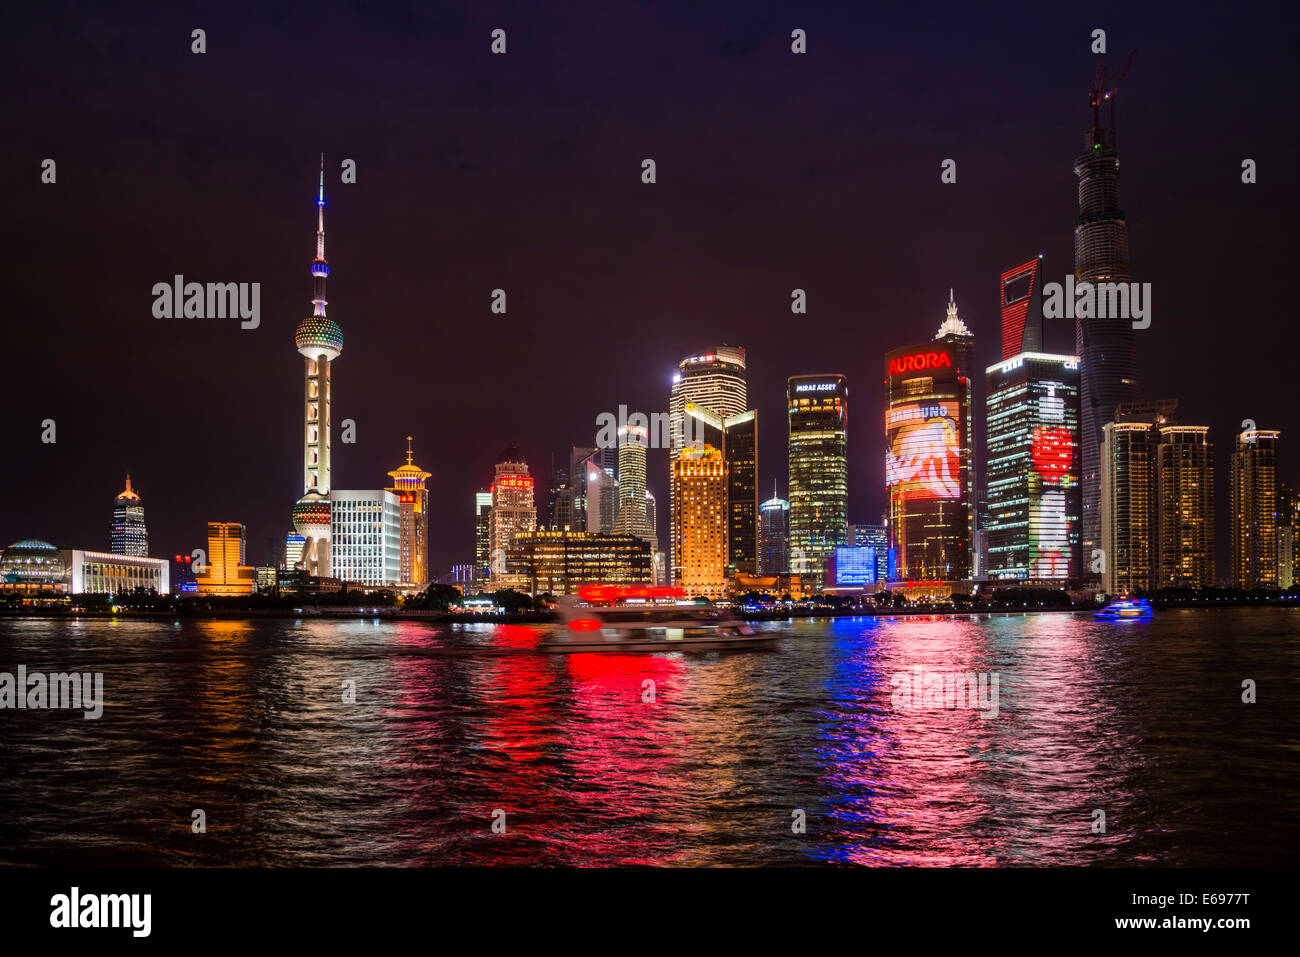 Skyline mit Oriental Pearl Tower, Tsing-Mao-Tower, Flaschenöffner, Shanghai Tower und Huangpo River bei Nacht, Pudong, Shanghai Stockfoto